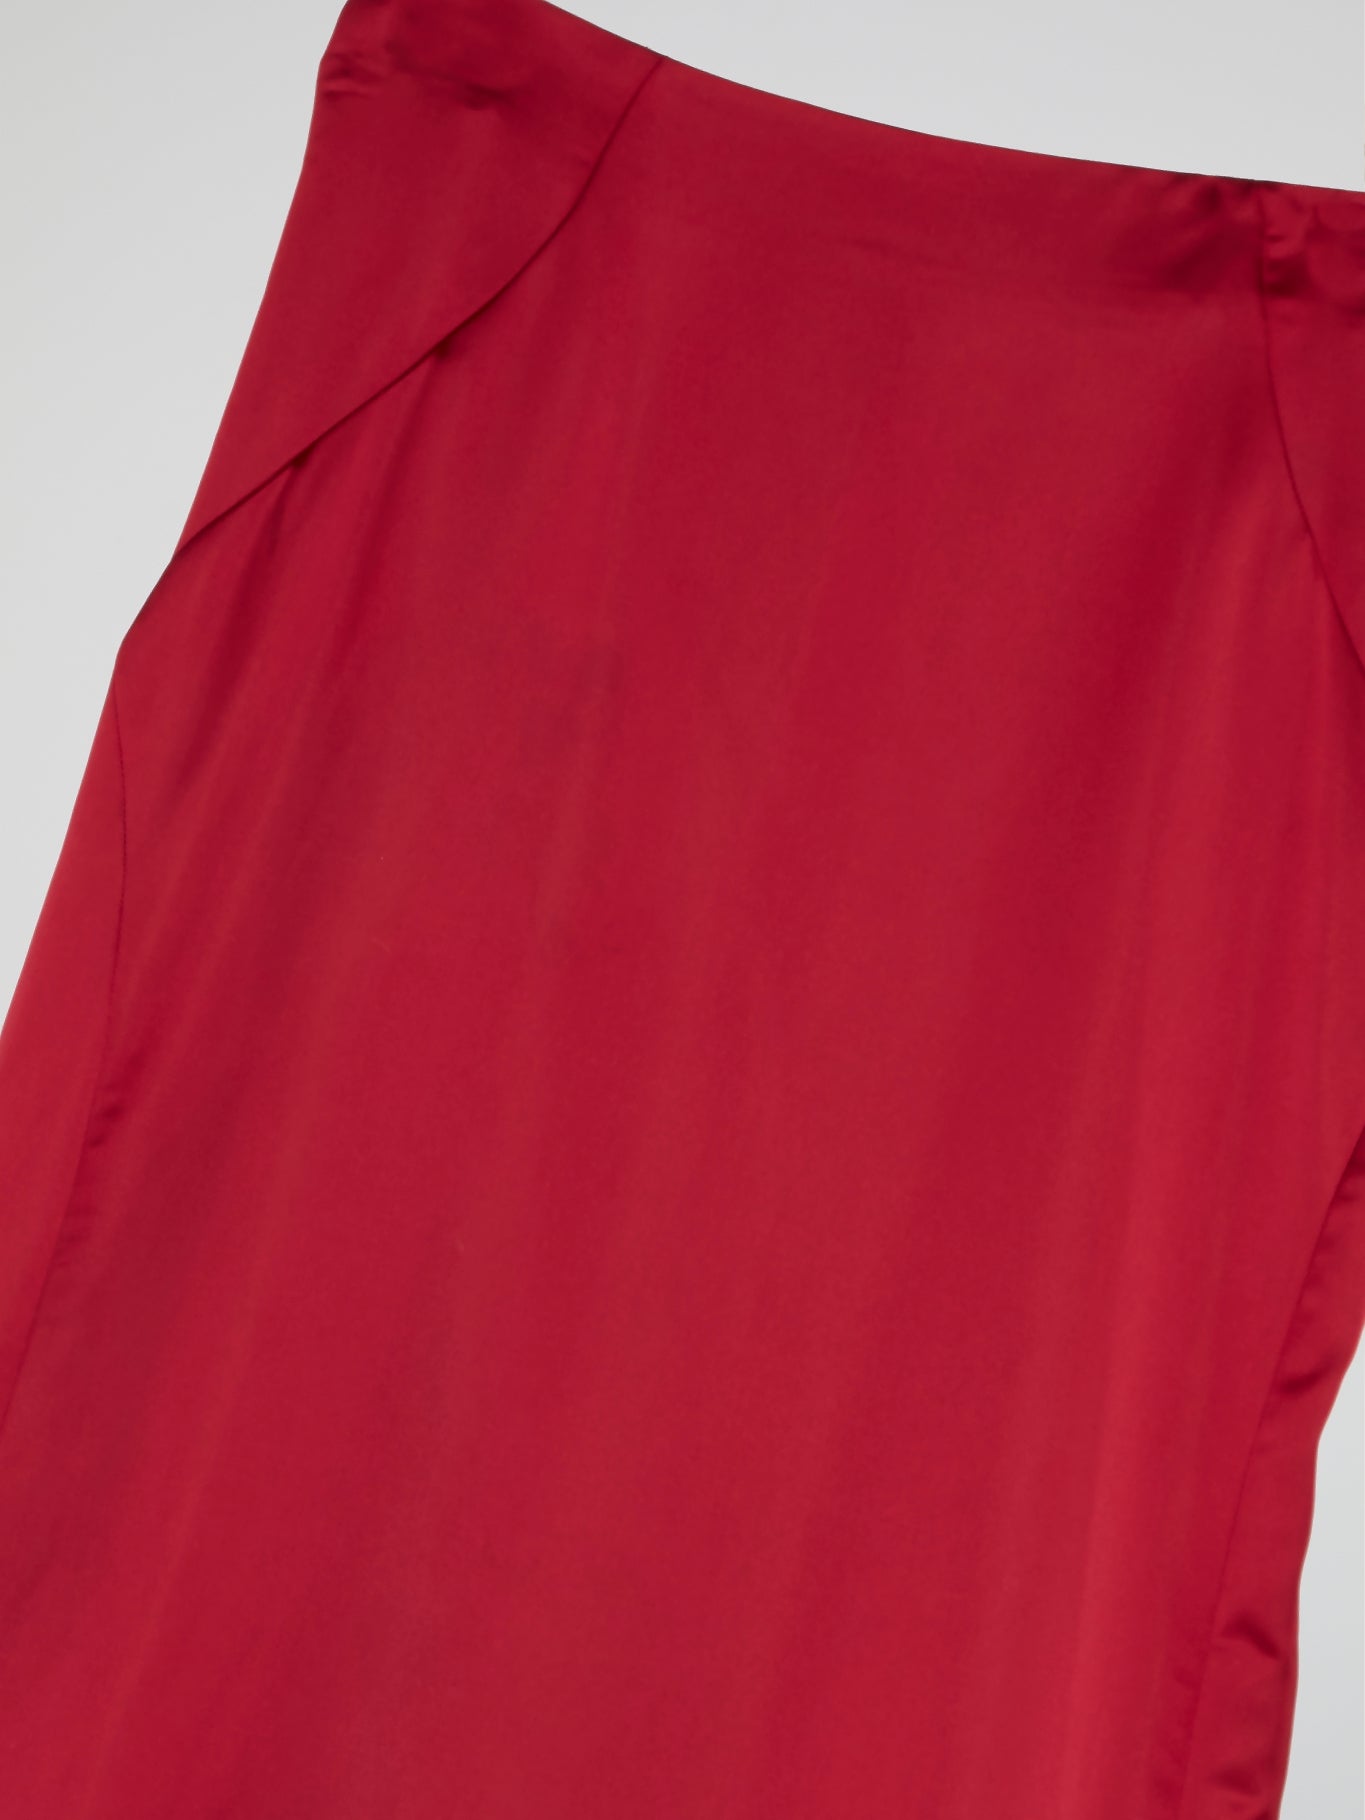 Red Godet Maxi Skirts